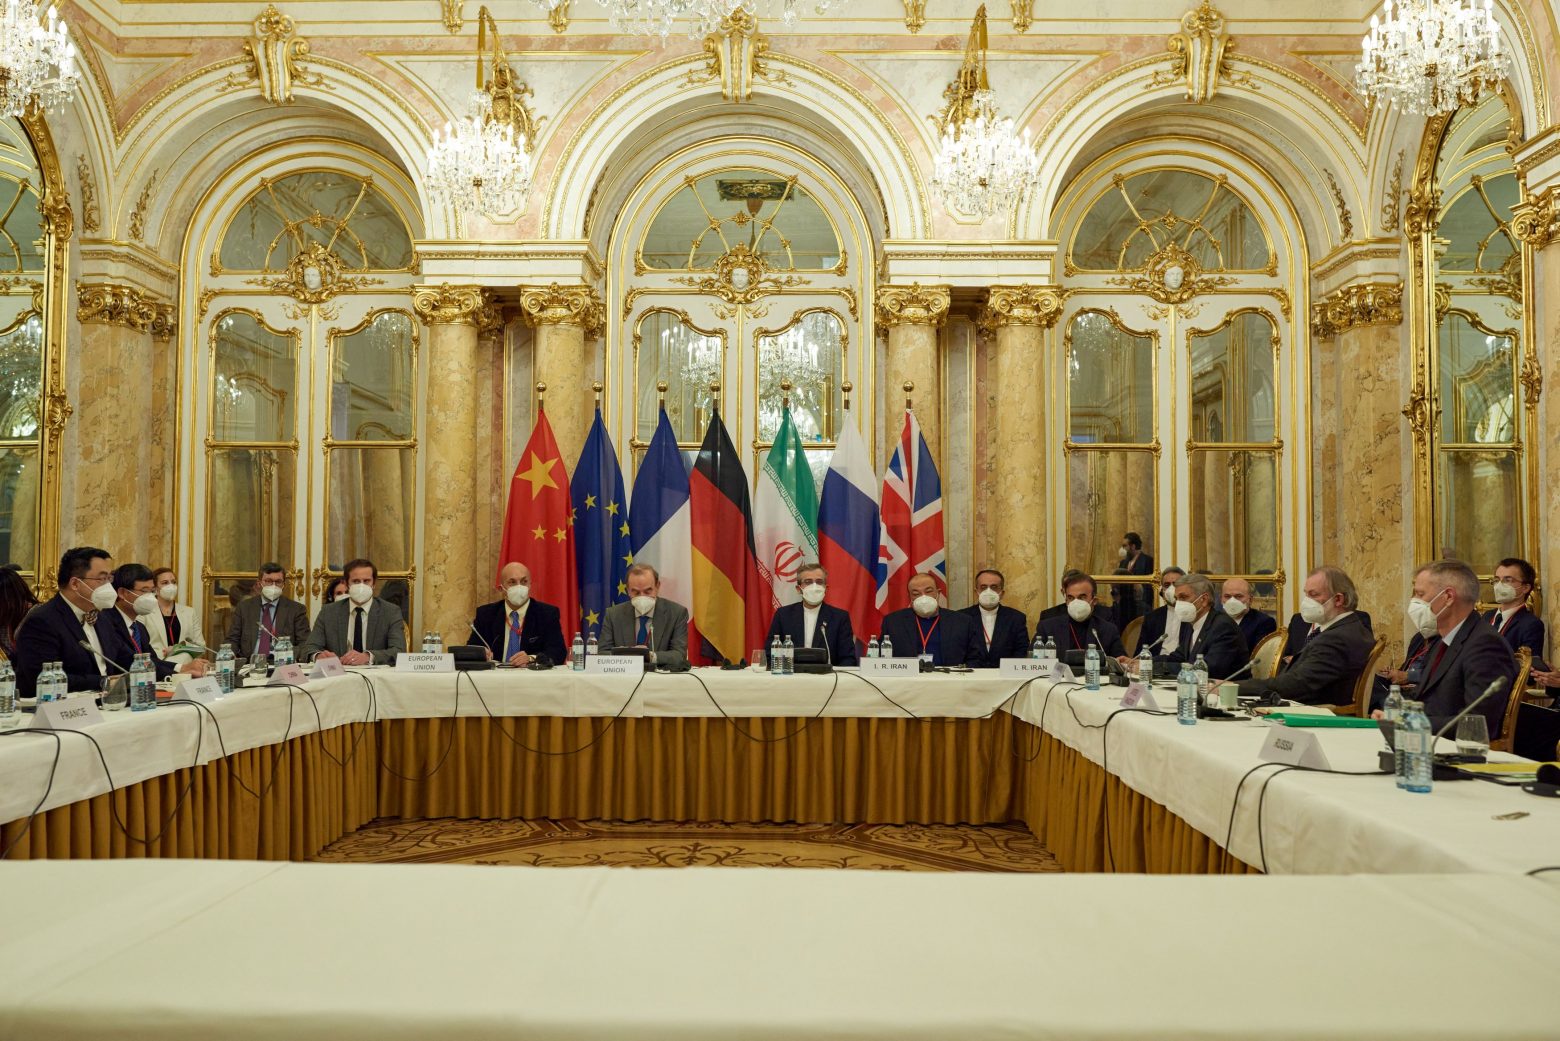 Ιράν - Θετικός ο πρώτος γύρος συνομιλιών για το πυρηνικό πρόγραμμα - Τι δήλωσε ο Ευρωπαίος διαπραγματευτής